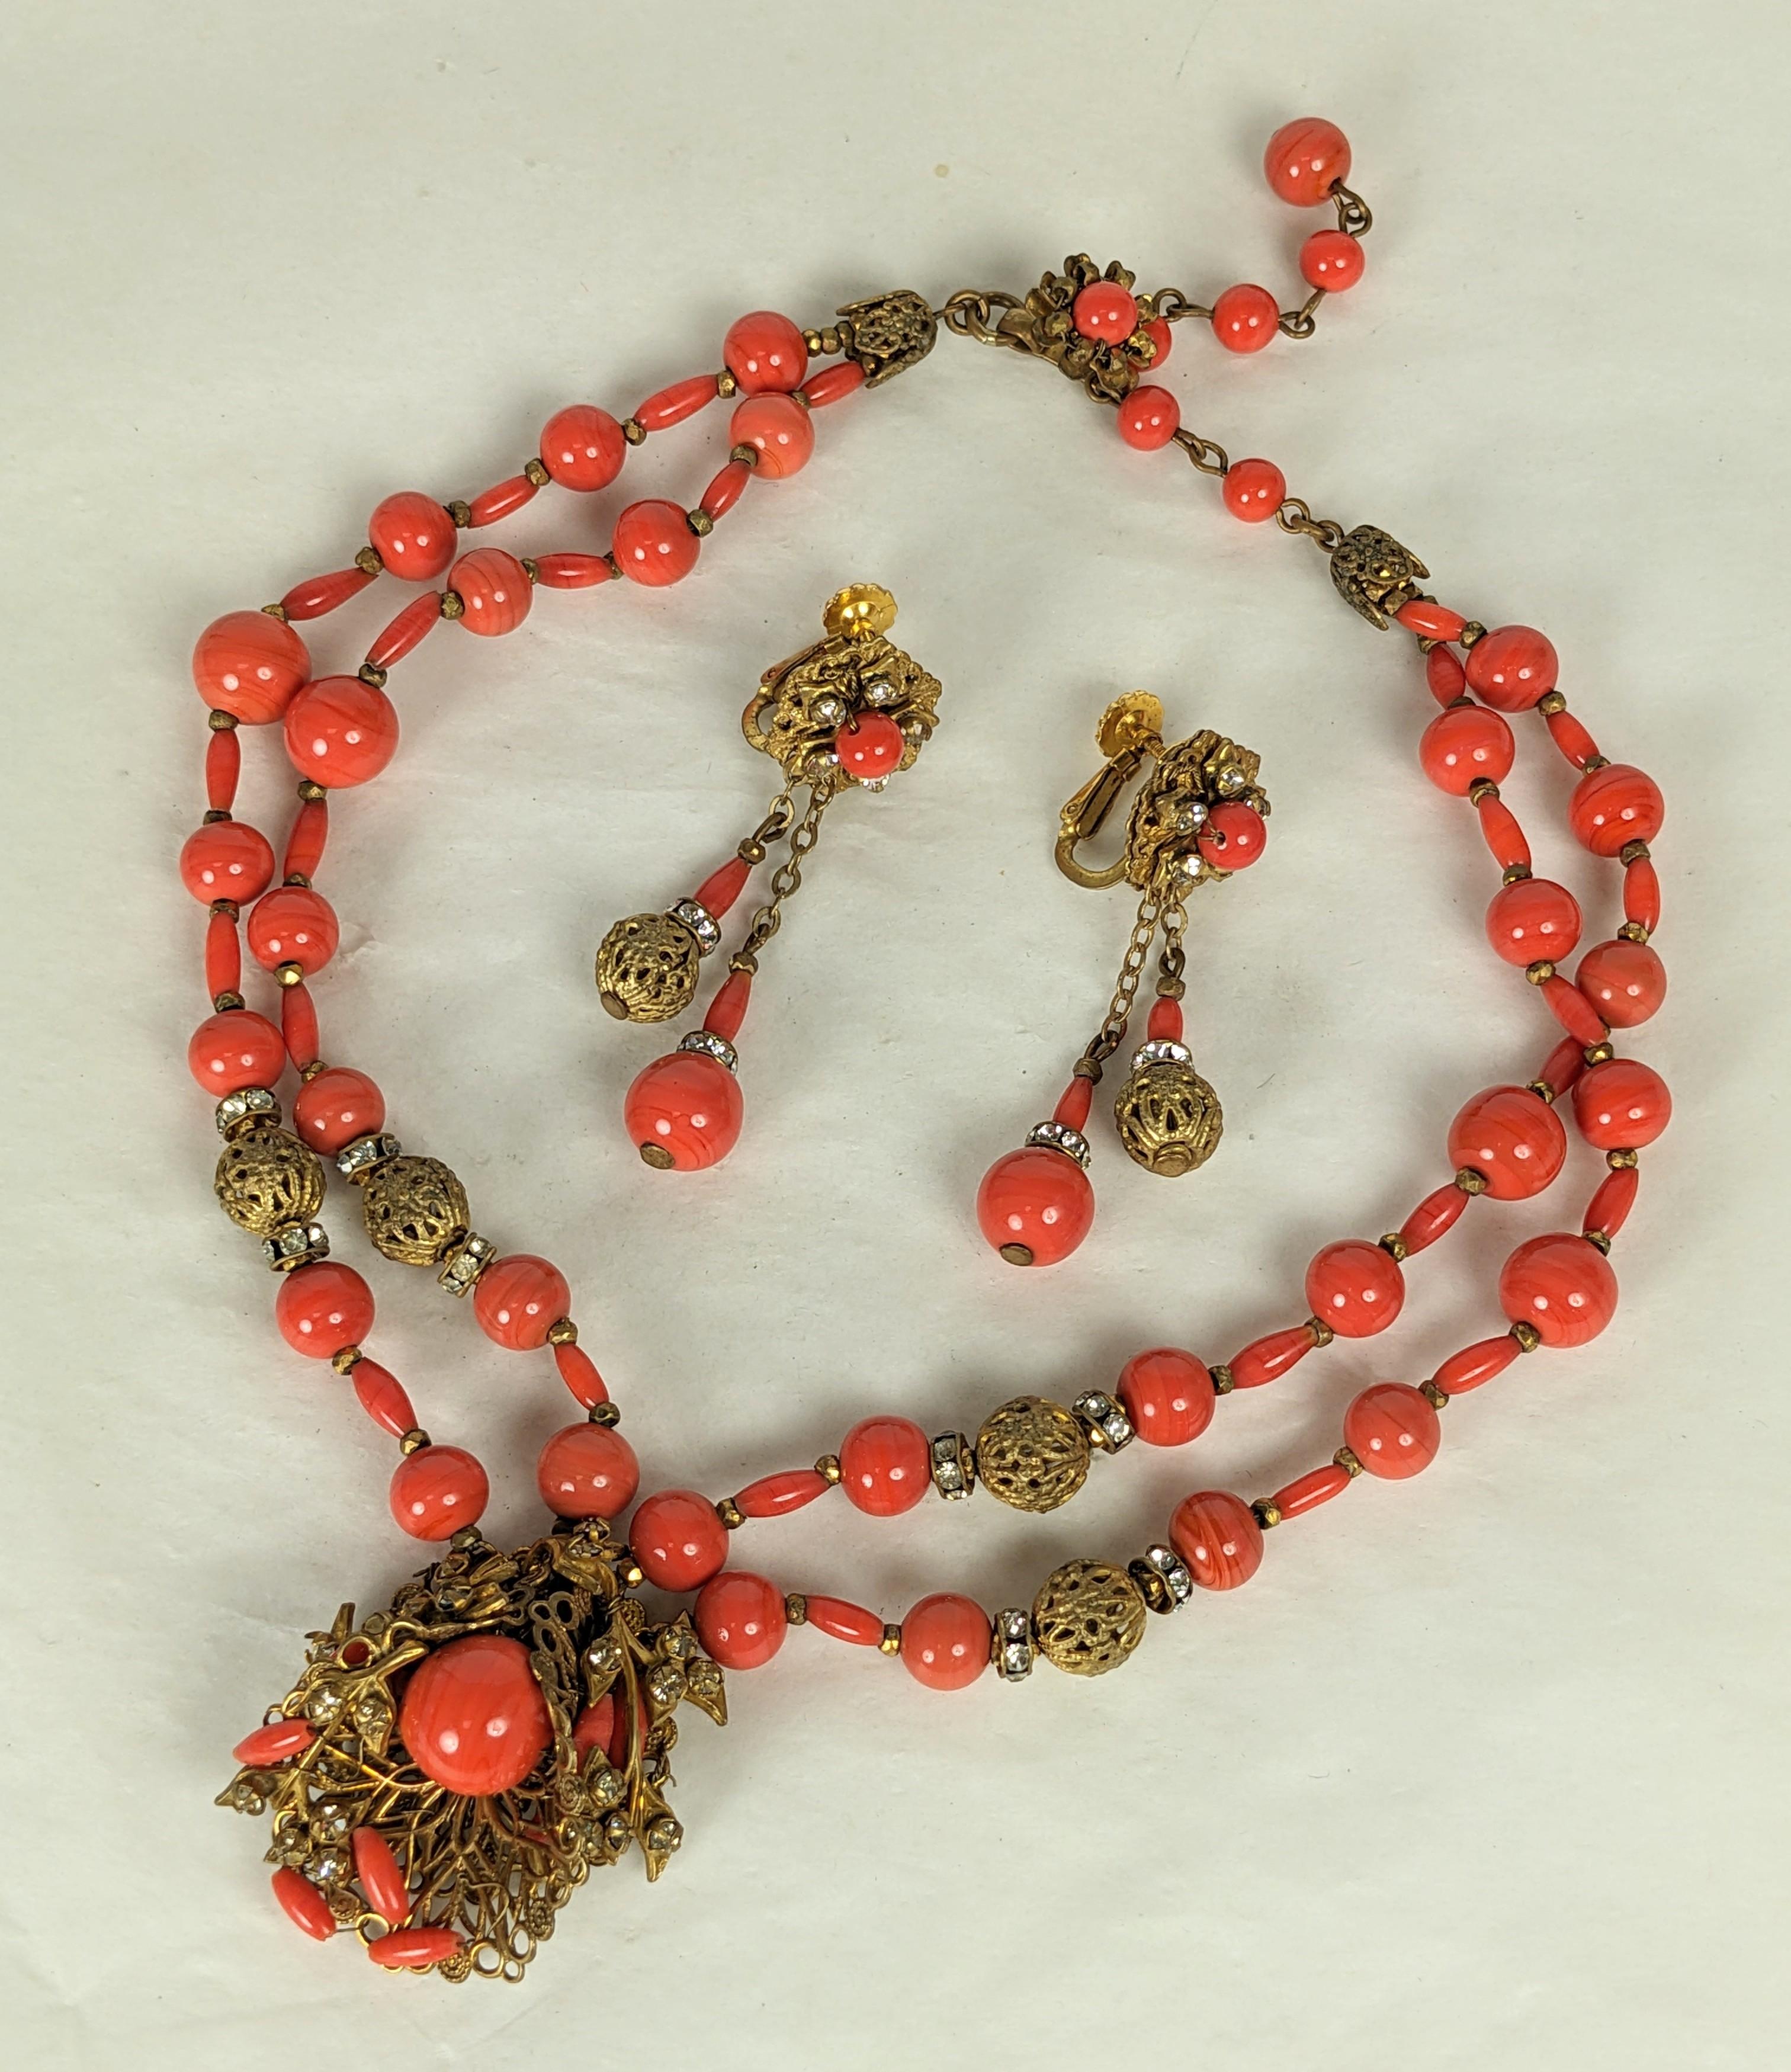 Suite en filigrane de faux corail de Miriam Haskell avec boucles d'oreilles pendantes des années 1950. 2 rangs de perles en verre corail et filigrane avec pendentif sur des filigranes cousus à la main et sertis de cristaux et de perles en faux